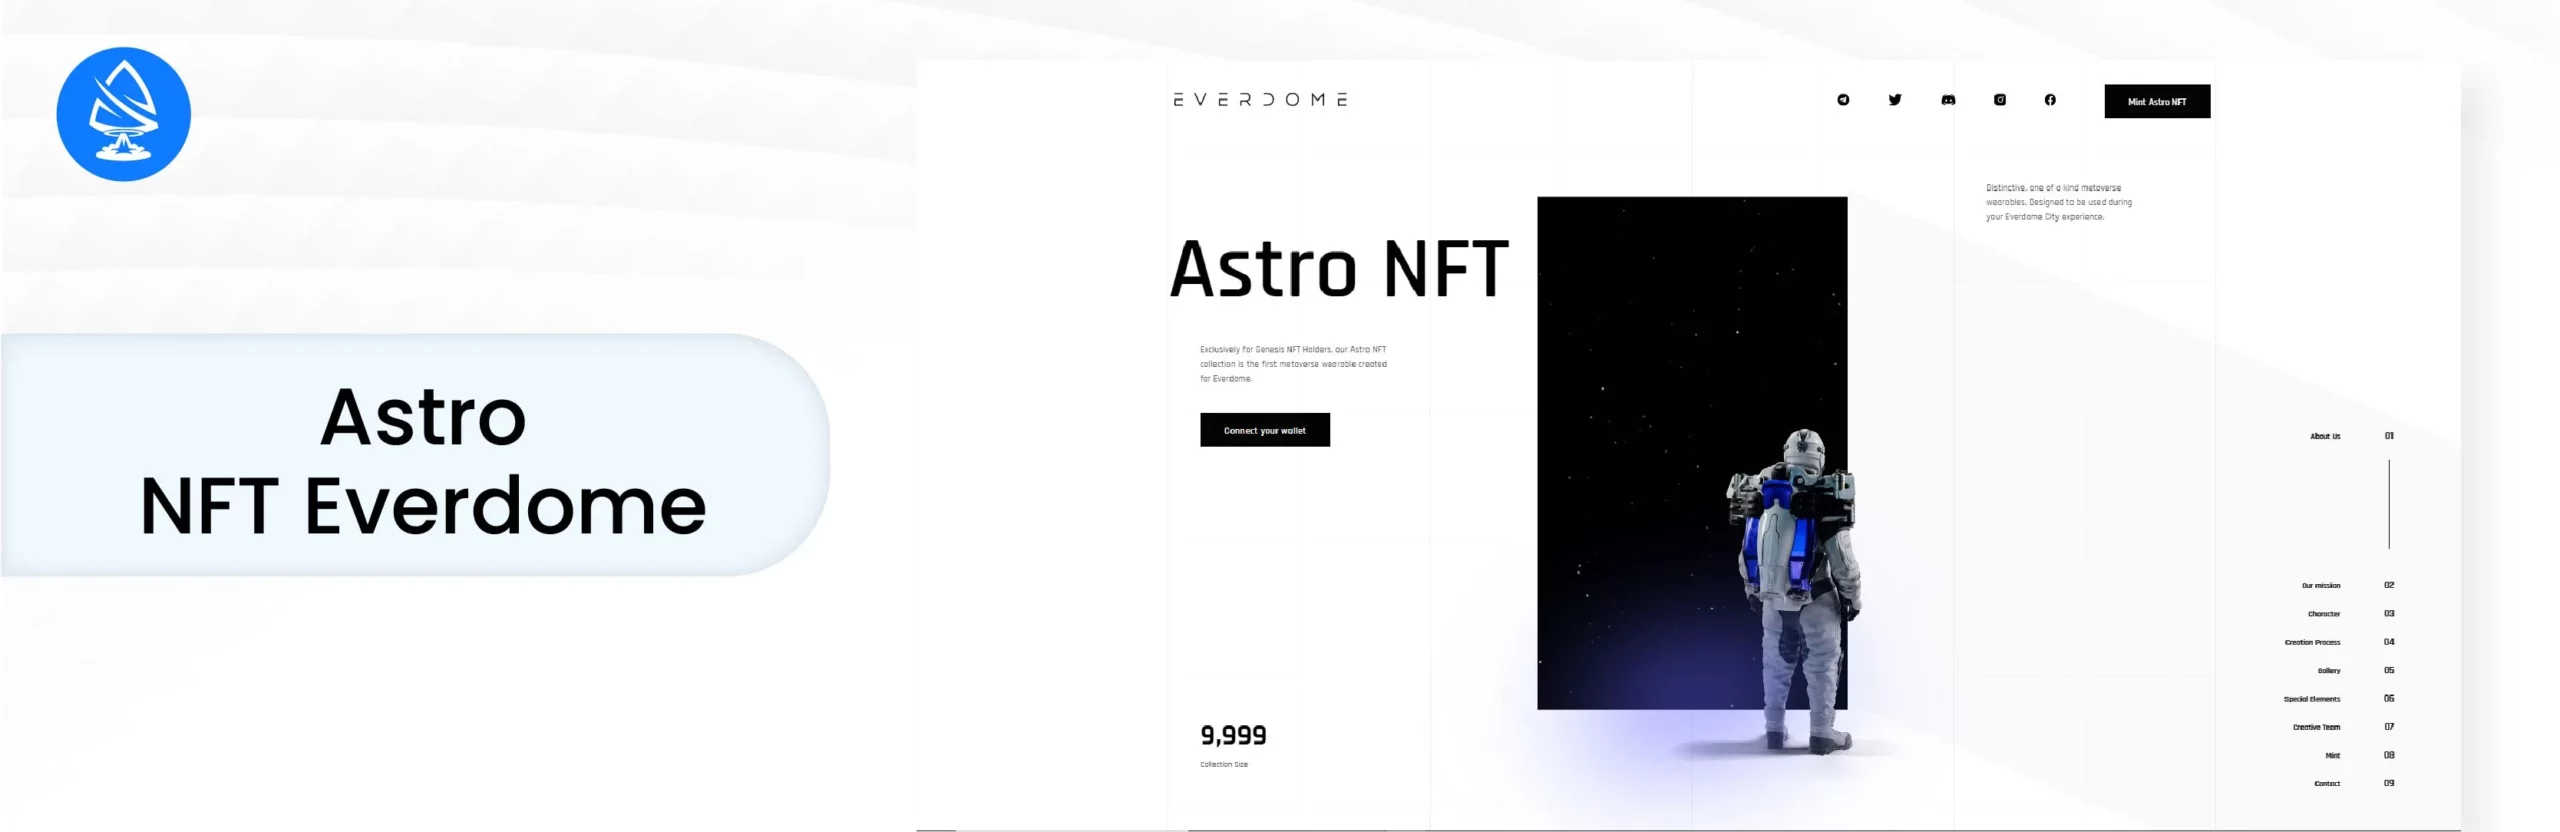 Astro NFT Everdome